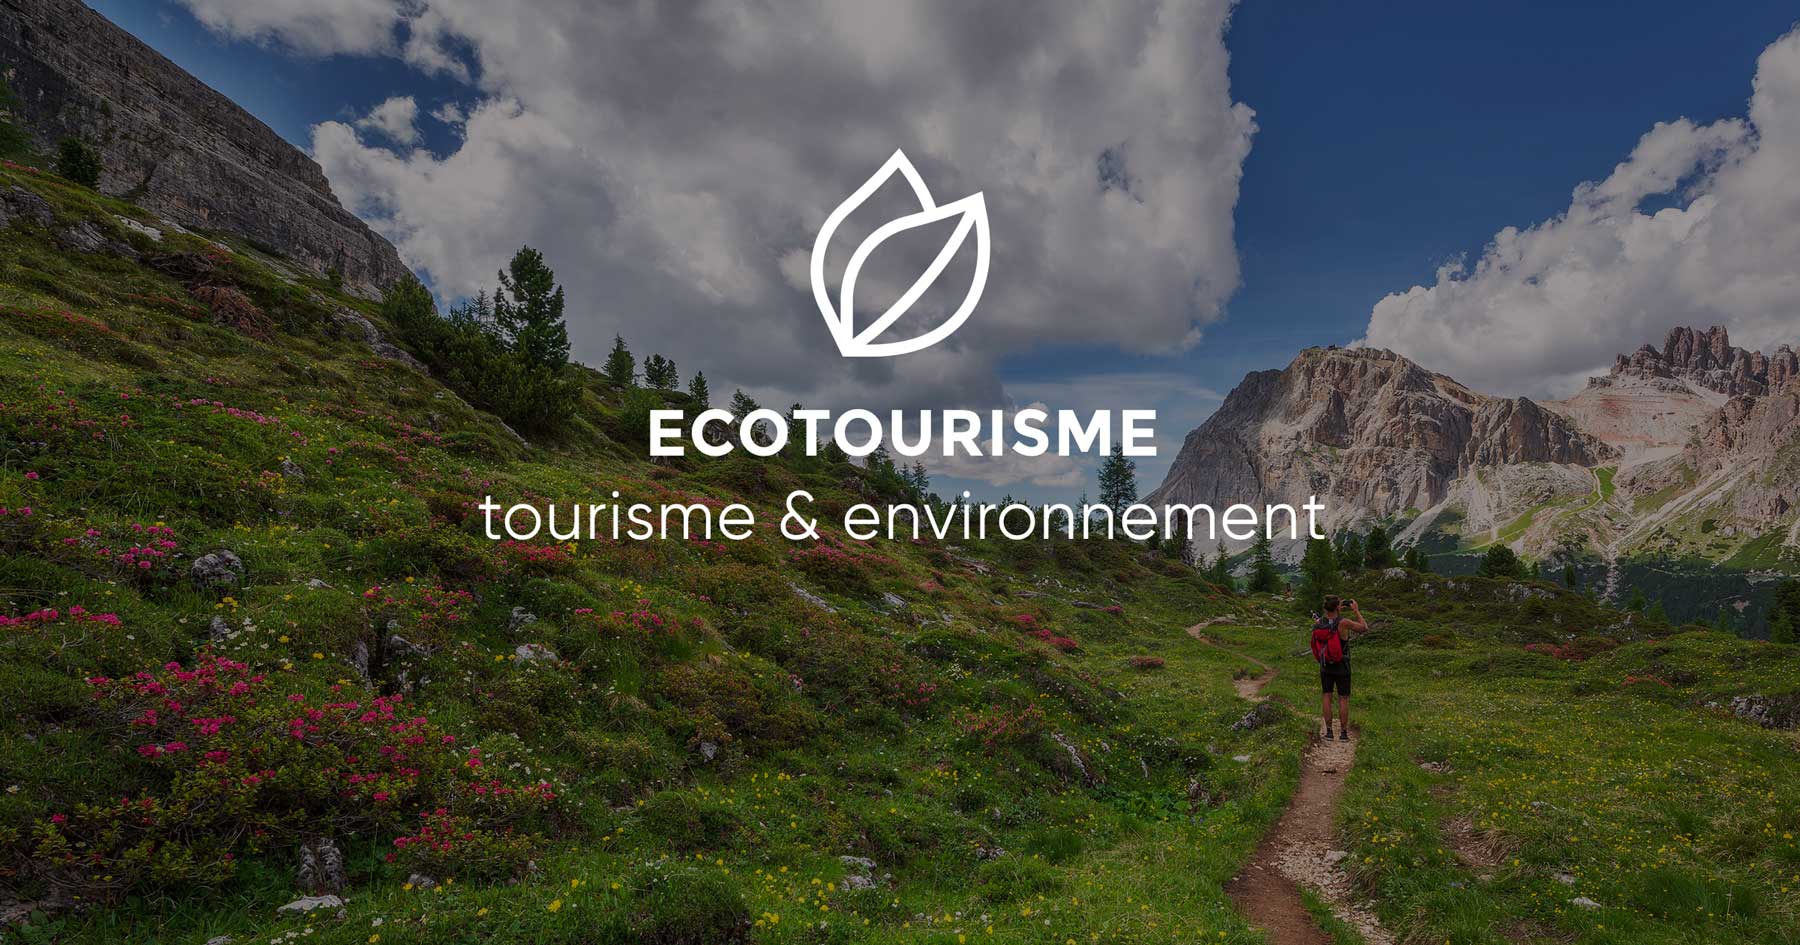 Ecotourisme : la définition d’un tourisme responsable et respectueux de l’environnement